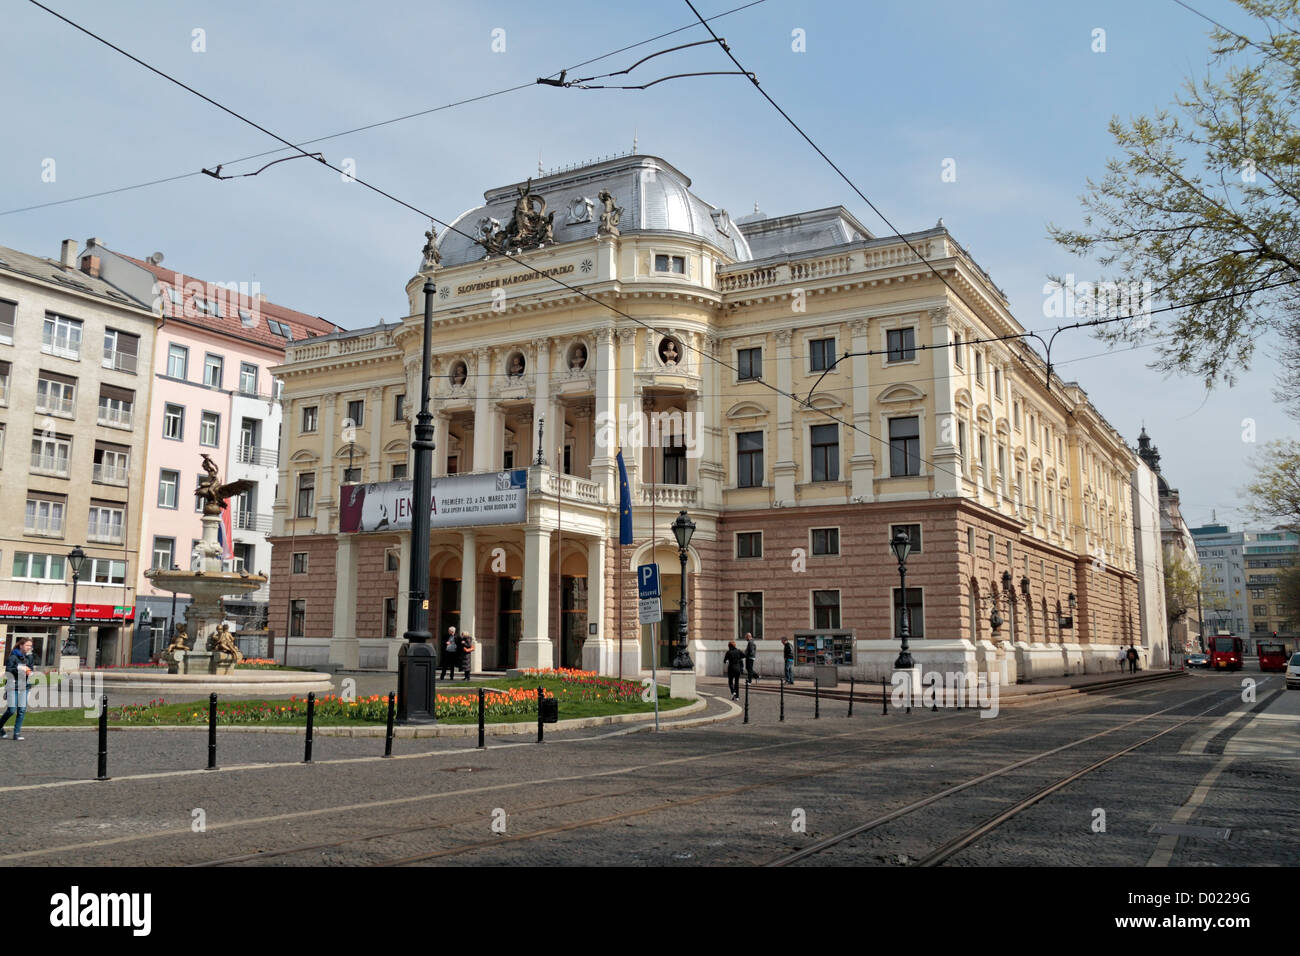 The Slovak National Theatre, Hviezdoslavovo námestie, Bratislava, Slovakia. Stock Photo